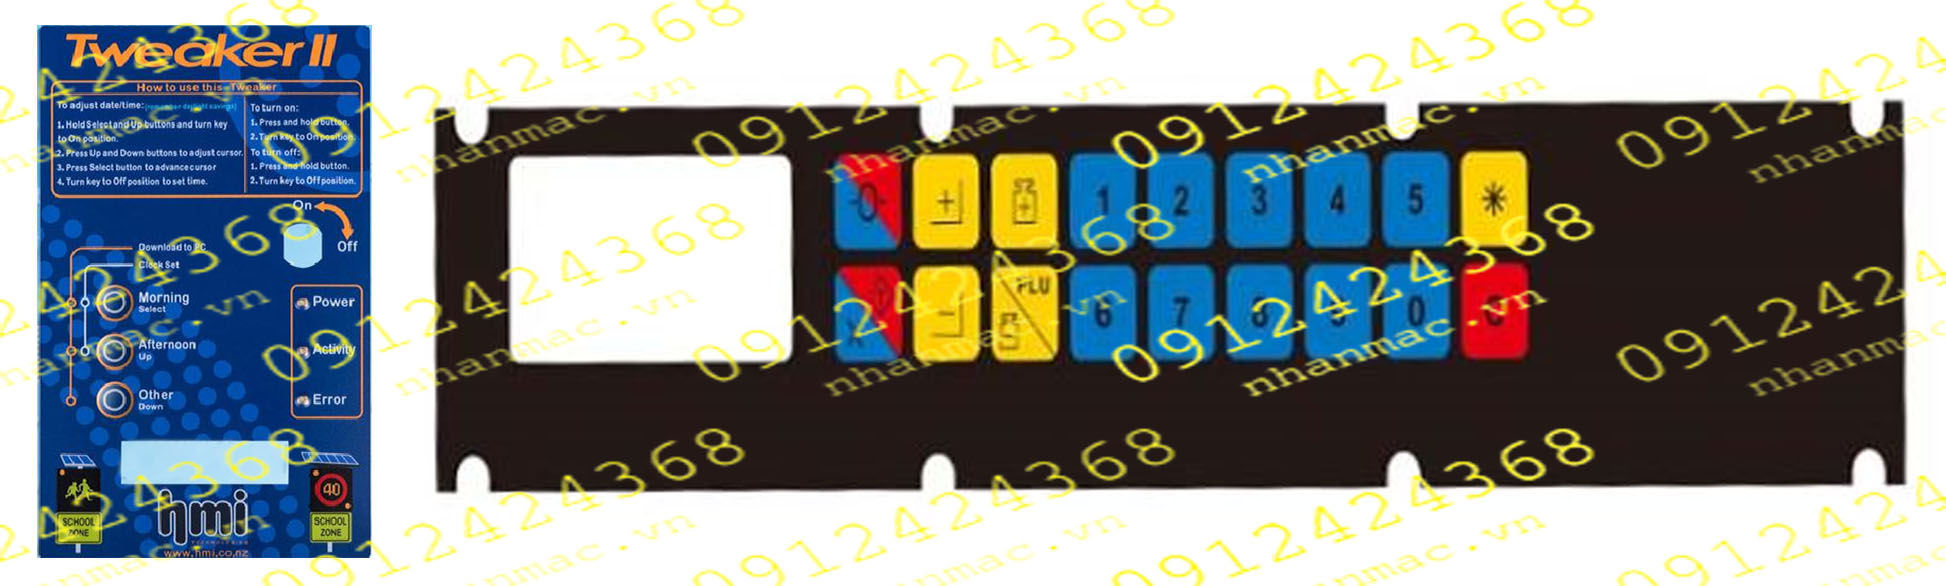 MD12- -  Miếng dán nhấn nút nổi làm tấm che mặt bàn phím bảng điều khiển được sử dụng làm phím bấm mềm bộ trung tâm điều khiển trong lĩnh vực Máy ép nhựạ